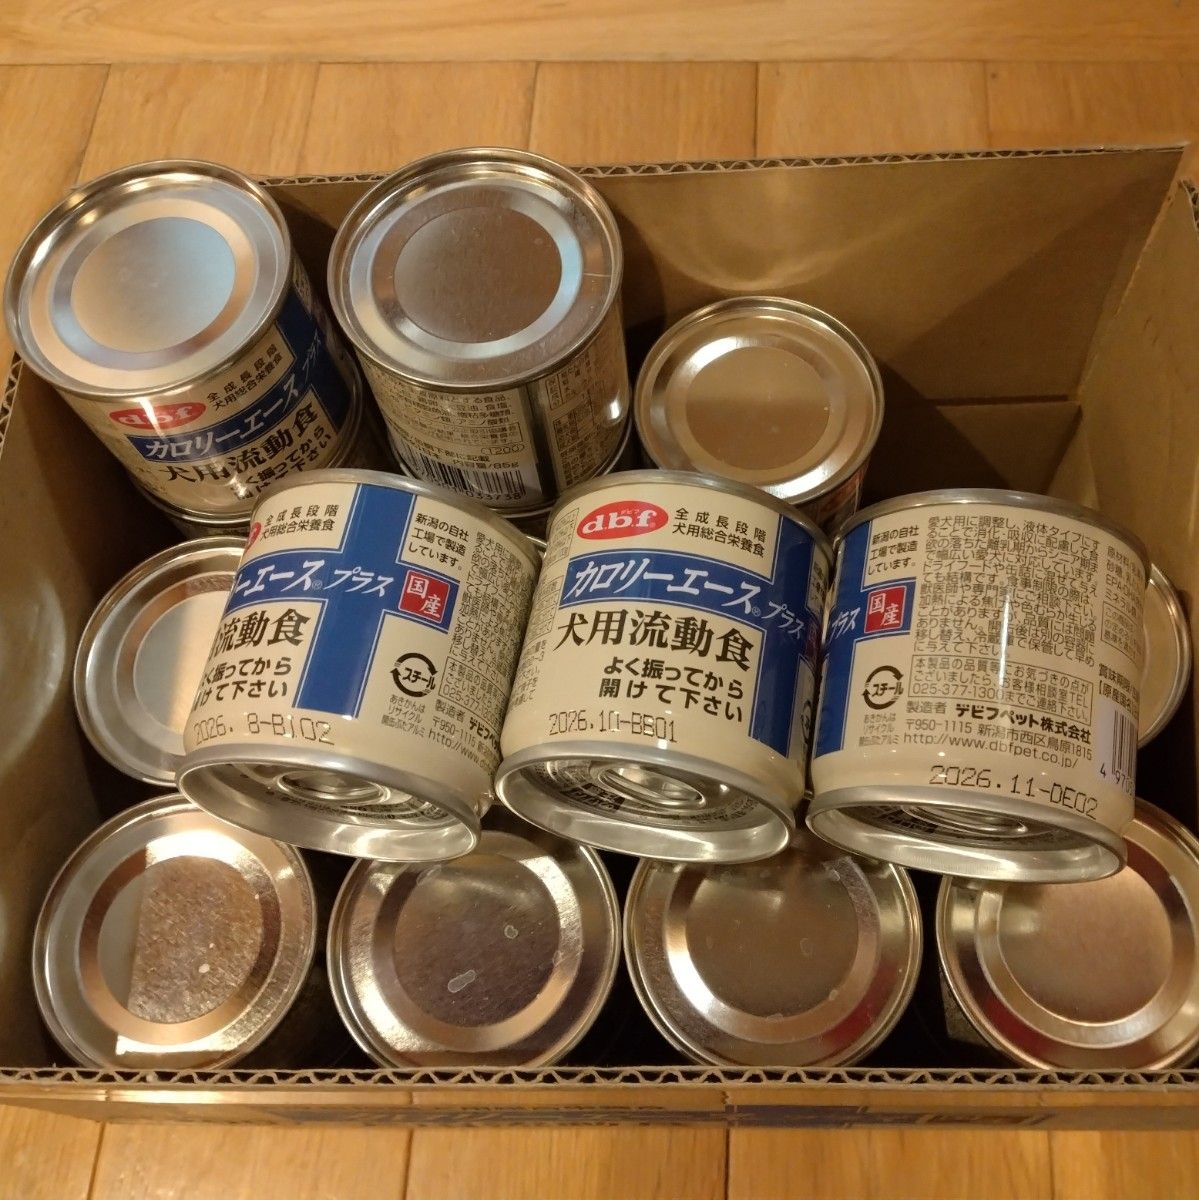 d.b.f デビフ カロリーエースプラス 犬用 流動総合栄養食缶 39缶